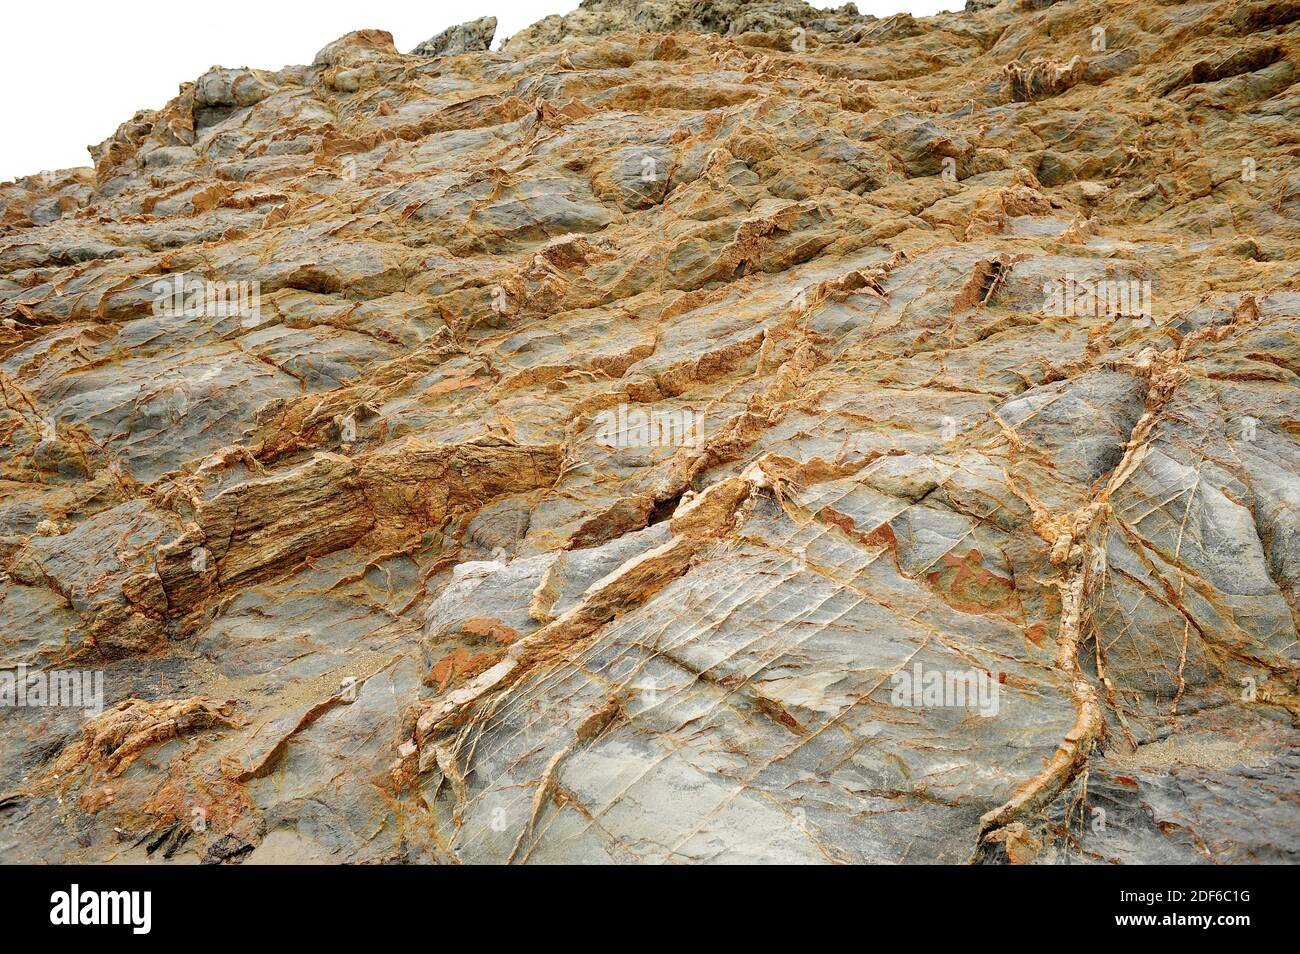 Dykes de quartz à travers la roche schiste. Cap Ras, Gérone, Catalogne, Espagne. Banque D'Images